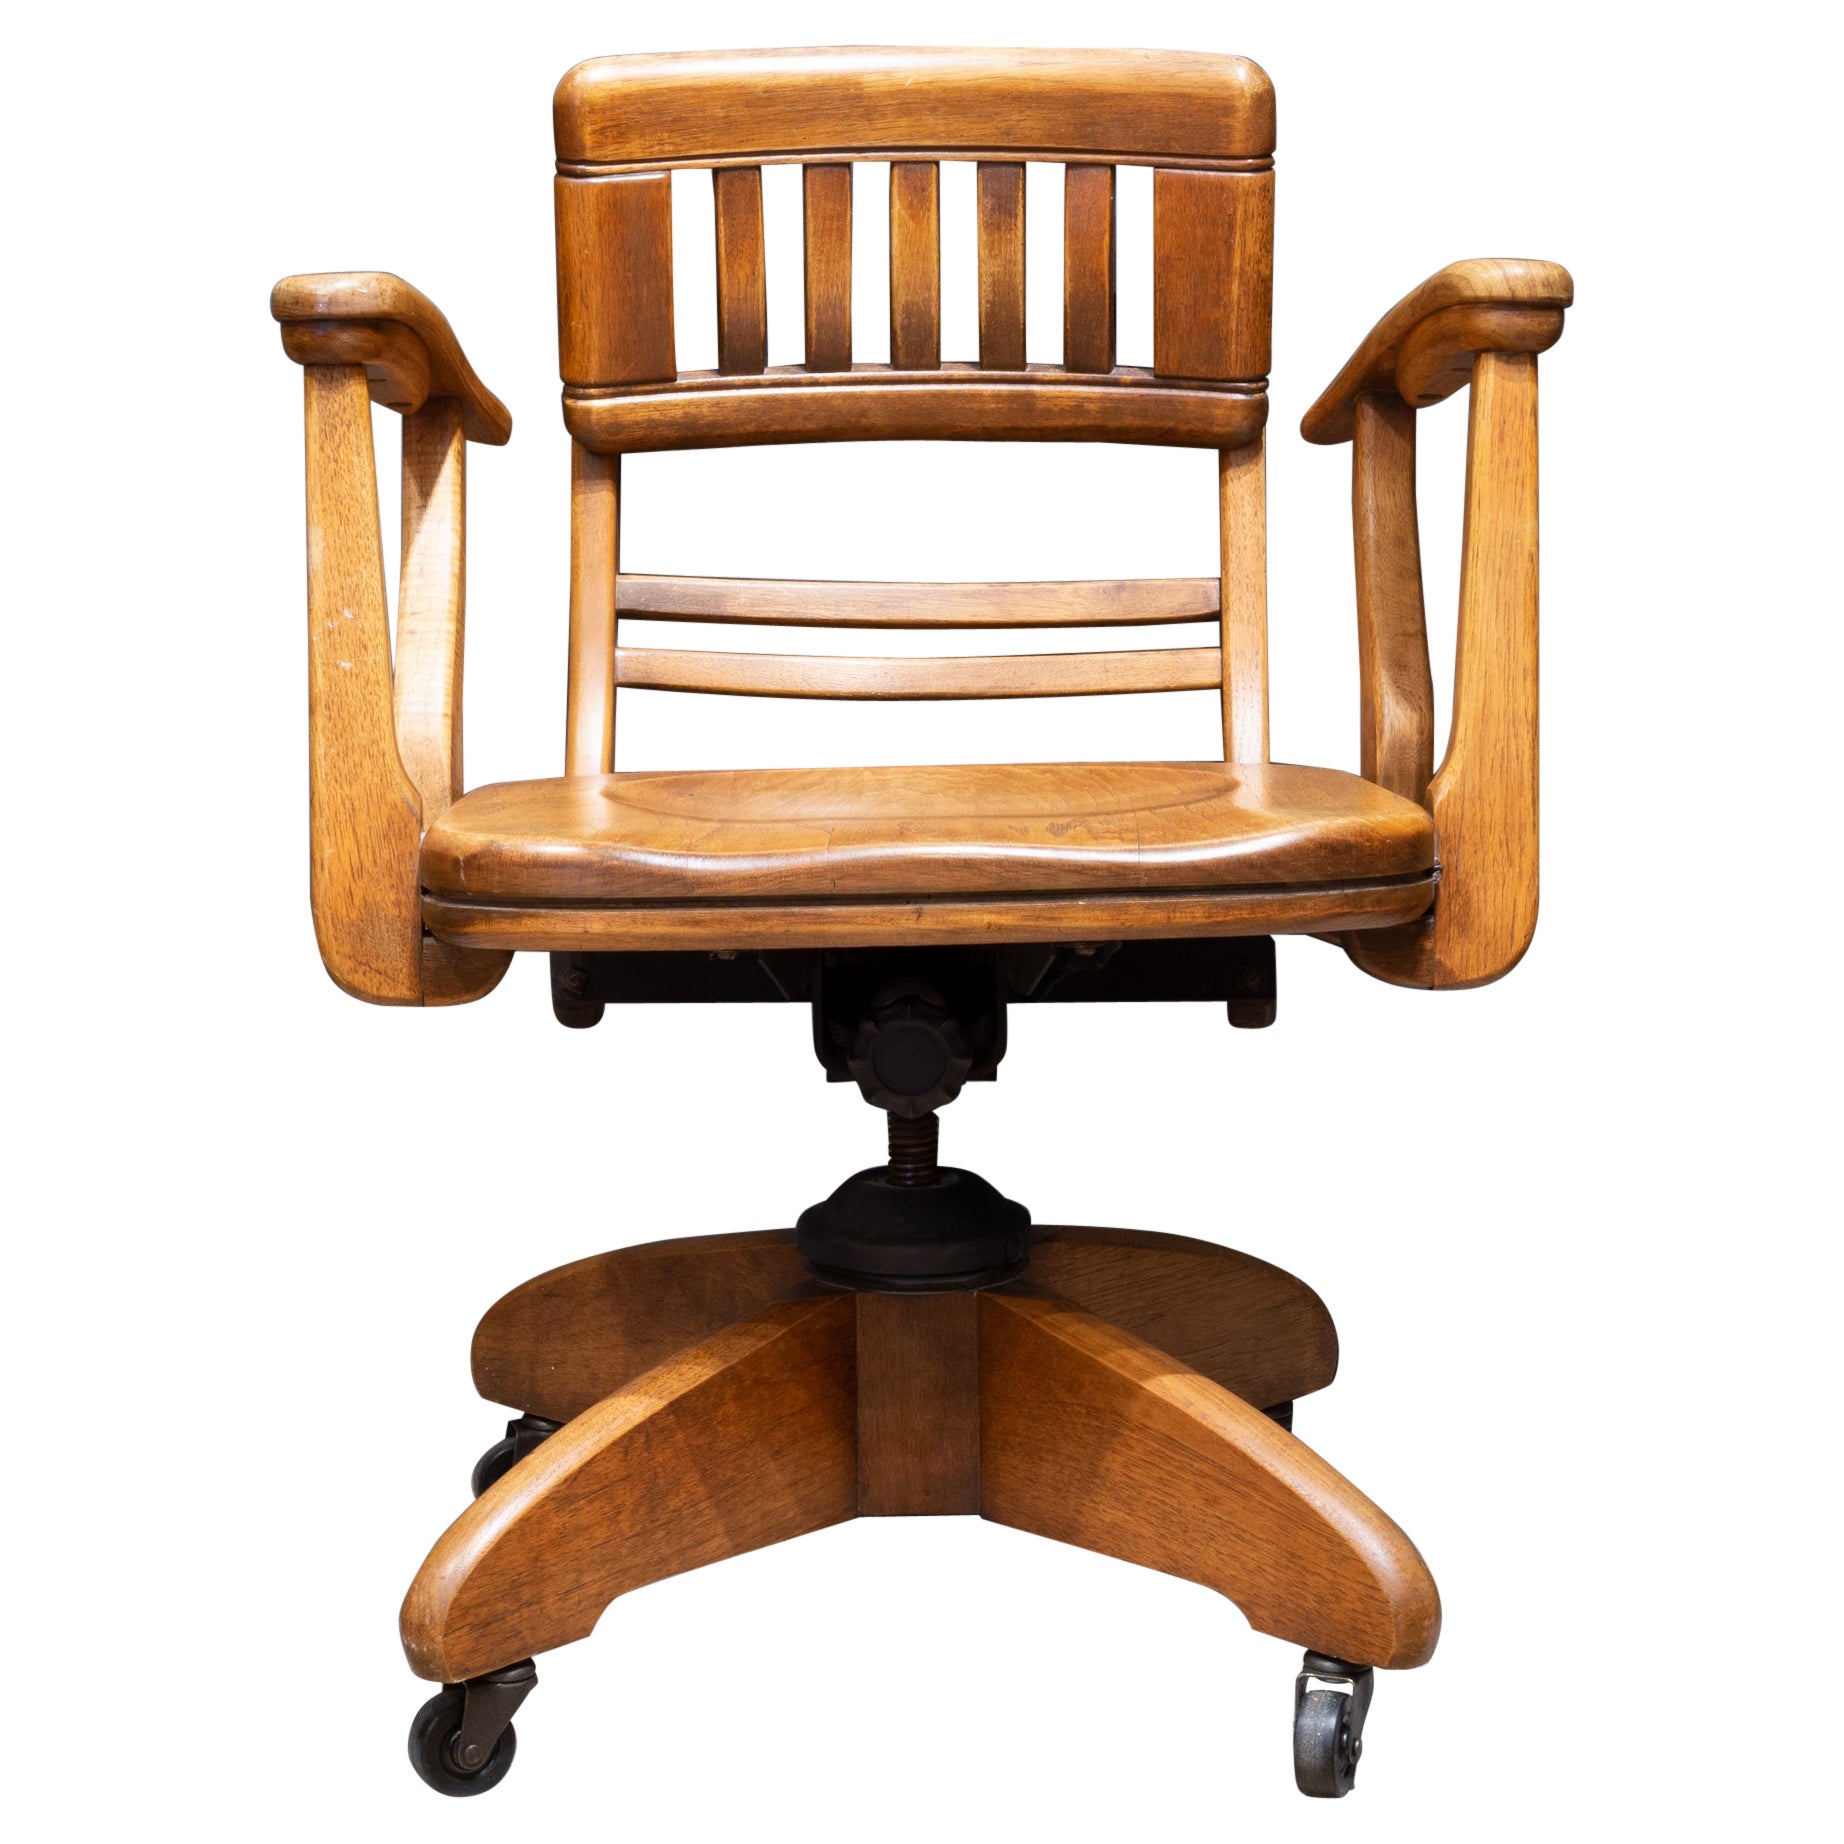 Rare Antique Adjustable Swivel Oak Desk Chair with Floating Back Rest c.1926 For Sale